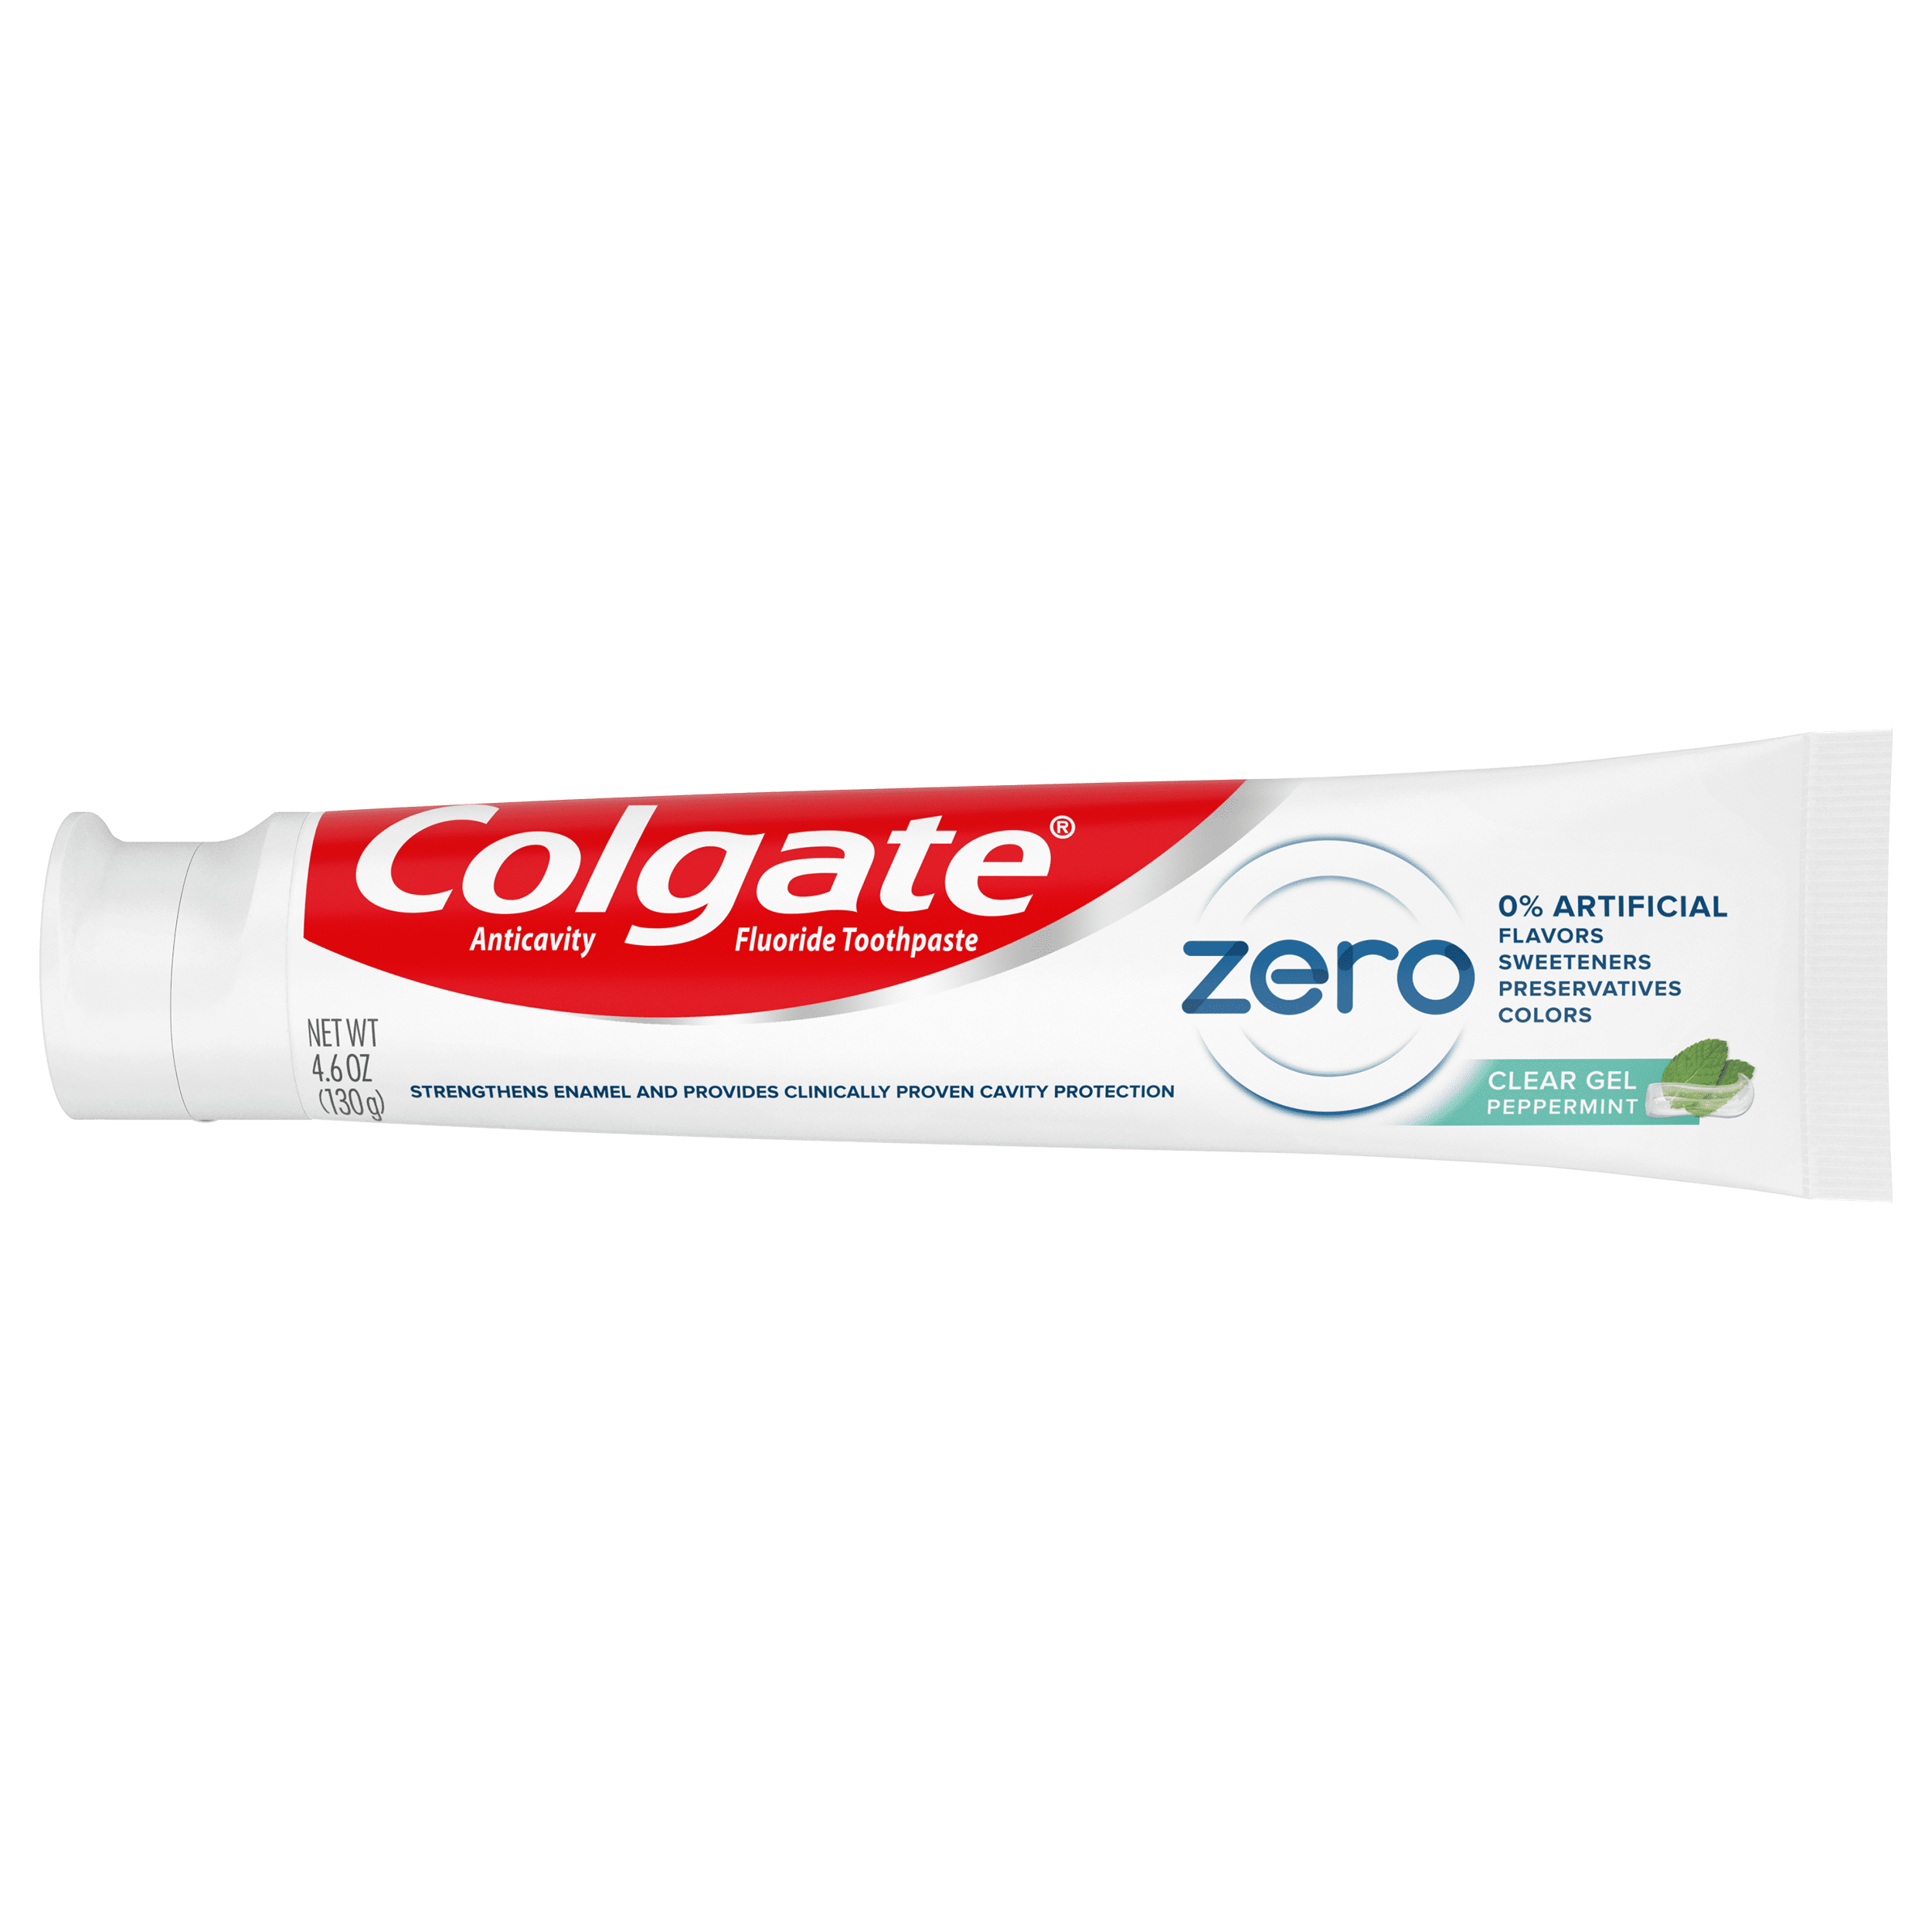 Colgate Zero зубная паста. Колгейт Зоро зубнаяпаста. Colgate Zero 98 ml. Колгейт паста зубная Зеро мягкое очищение 130г. Colgate паста купить